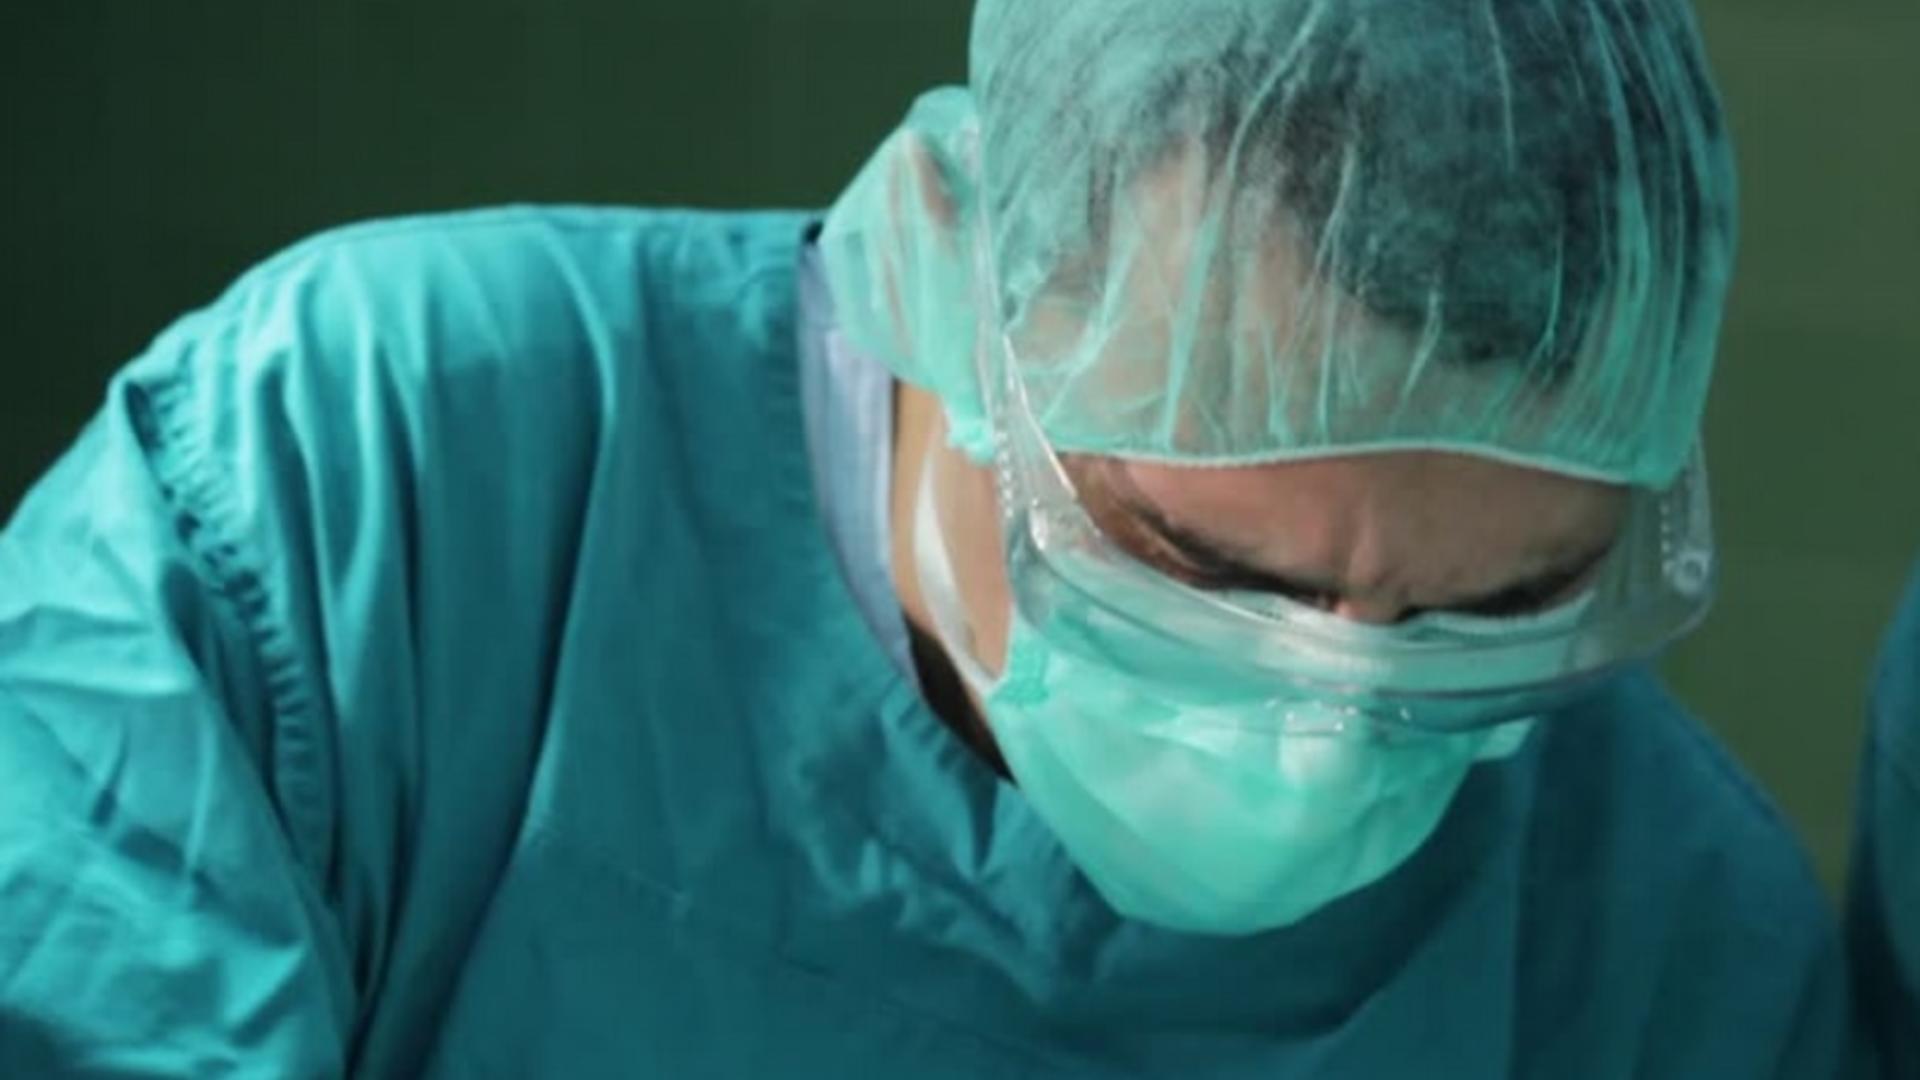 Medicul care a uitat mânerul de la frână în piciorul pacientului și-a cerut scuze